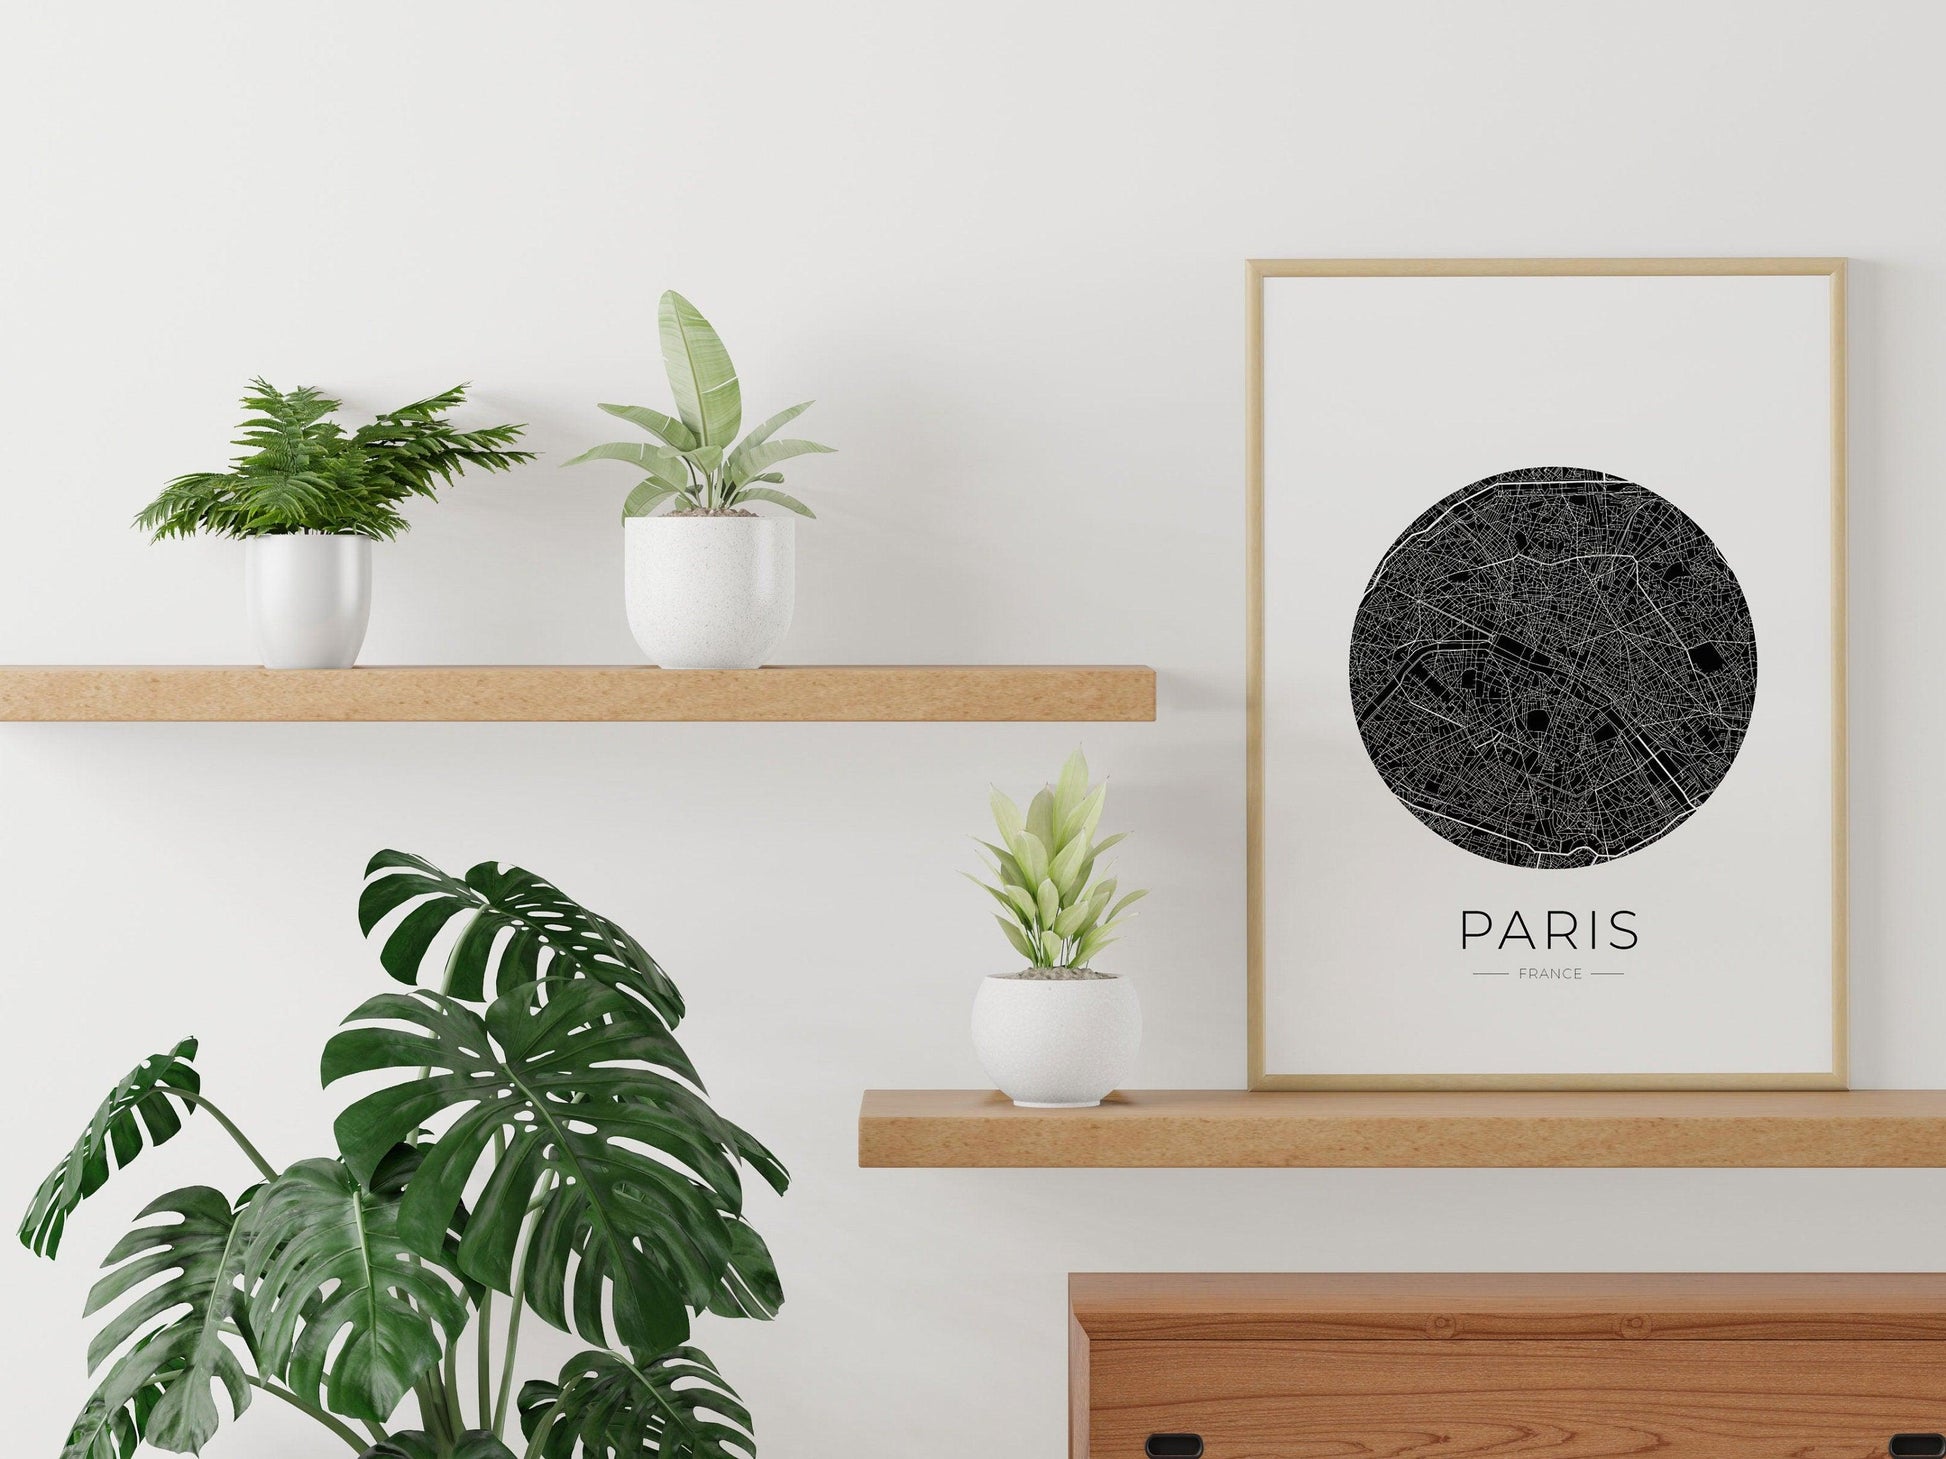 Affiche Paris City Map - ville de France poster - carte art - noir et blanc design - décoration salon - personnalisable - parisien - voyage - Imagine.affiche